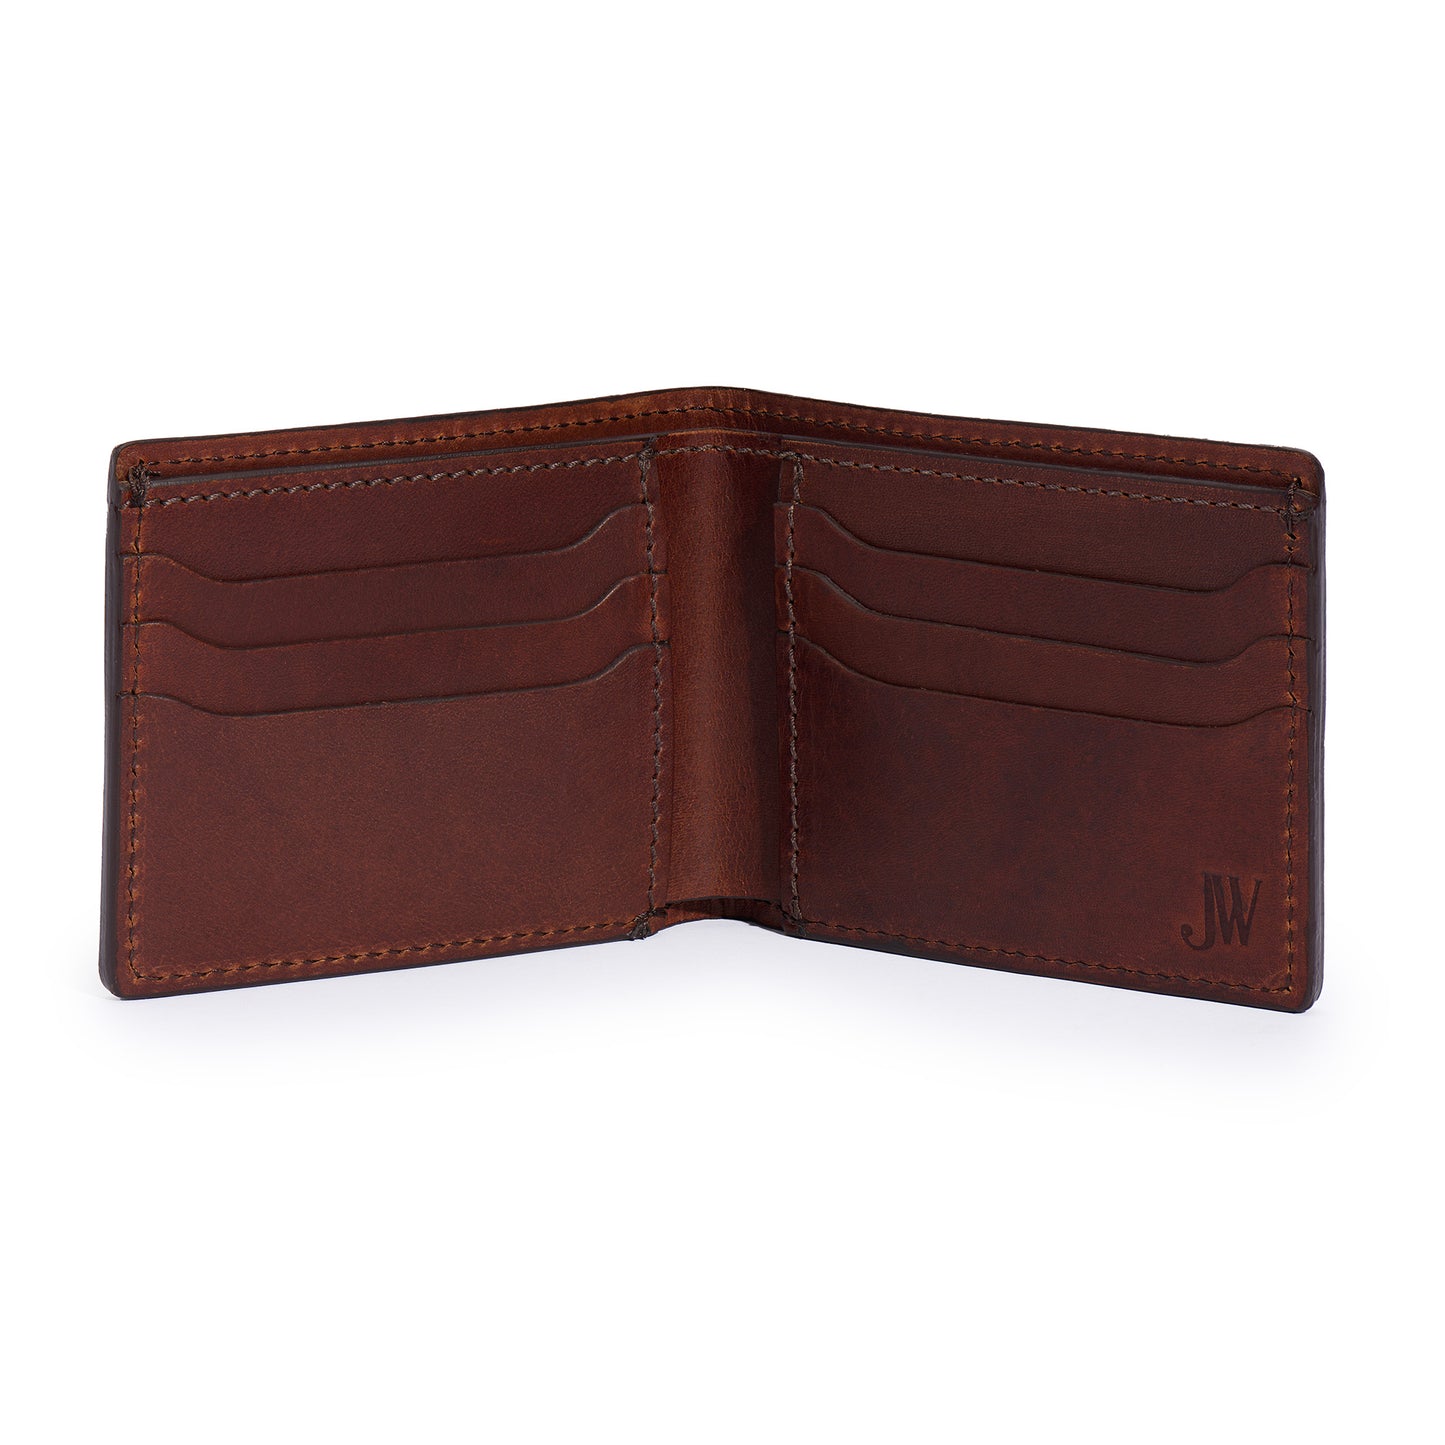 inside vintage brown leather bifold wallet 